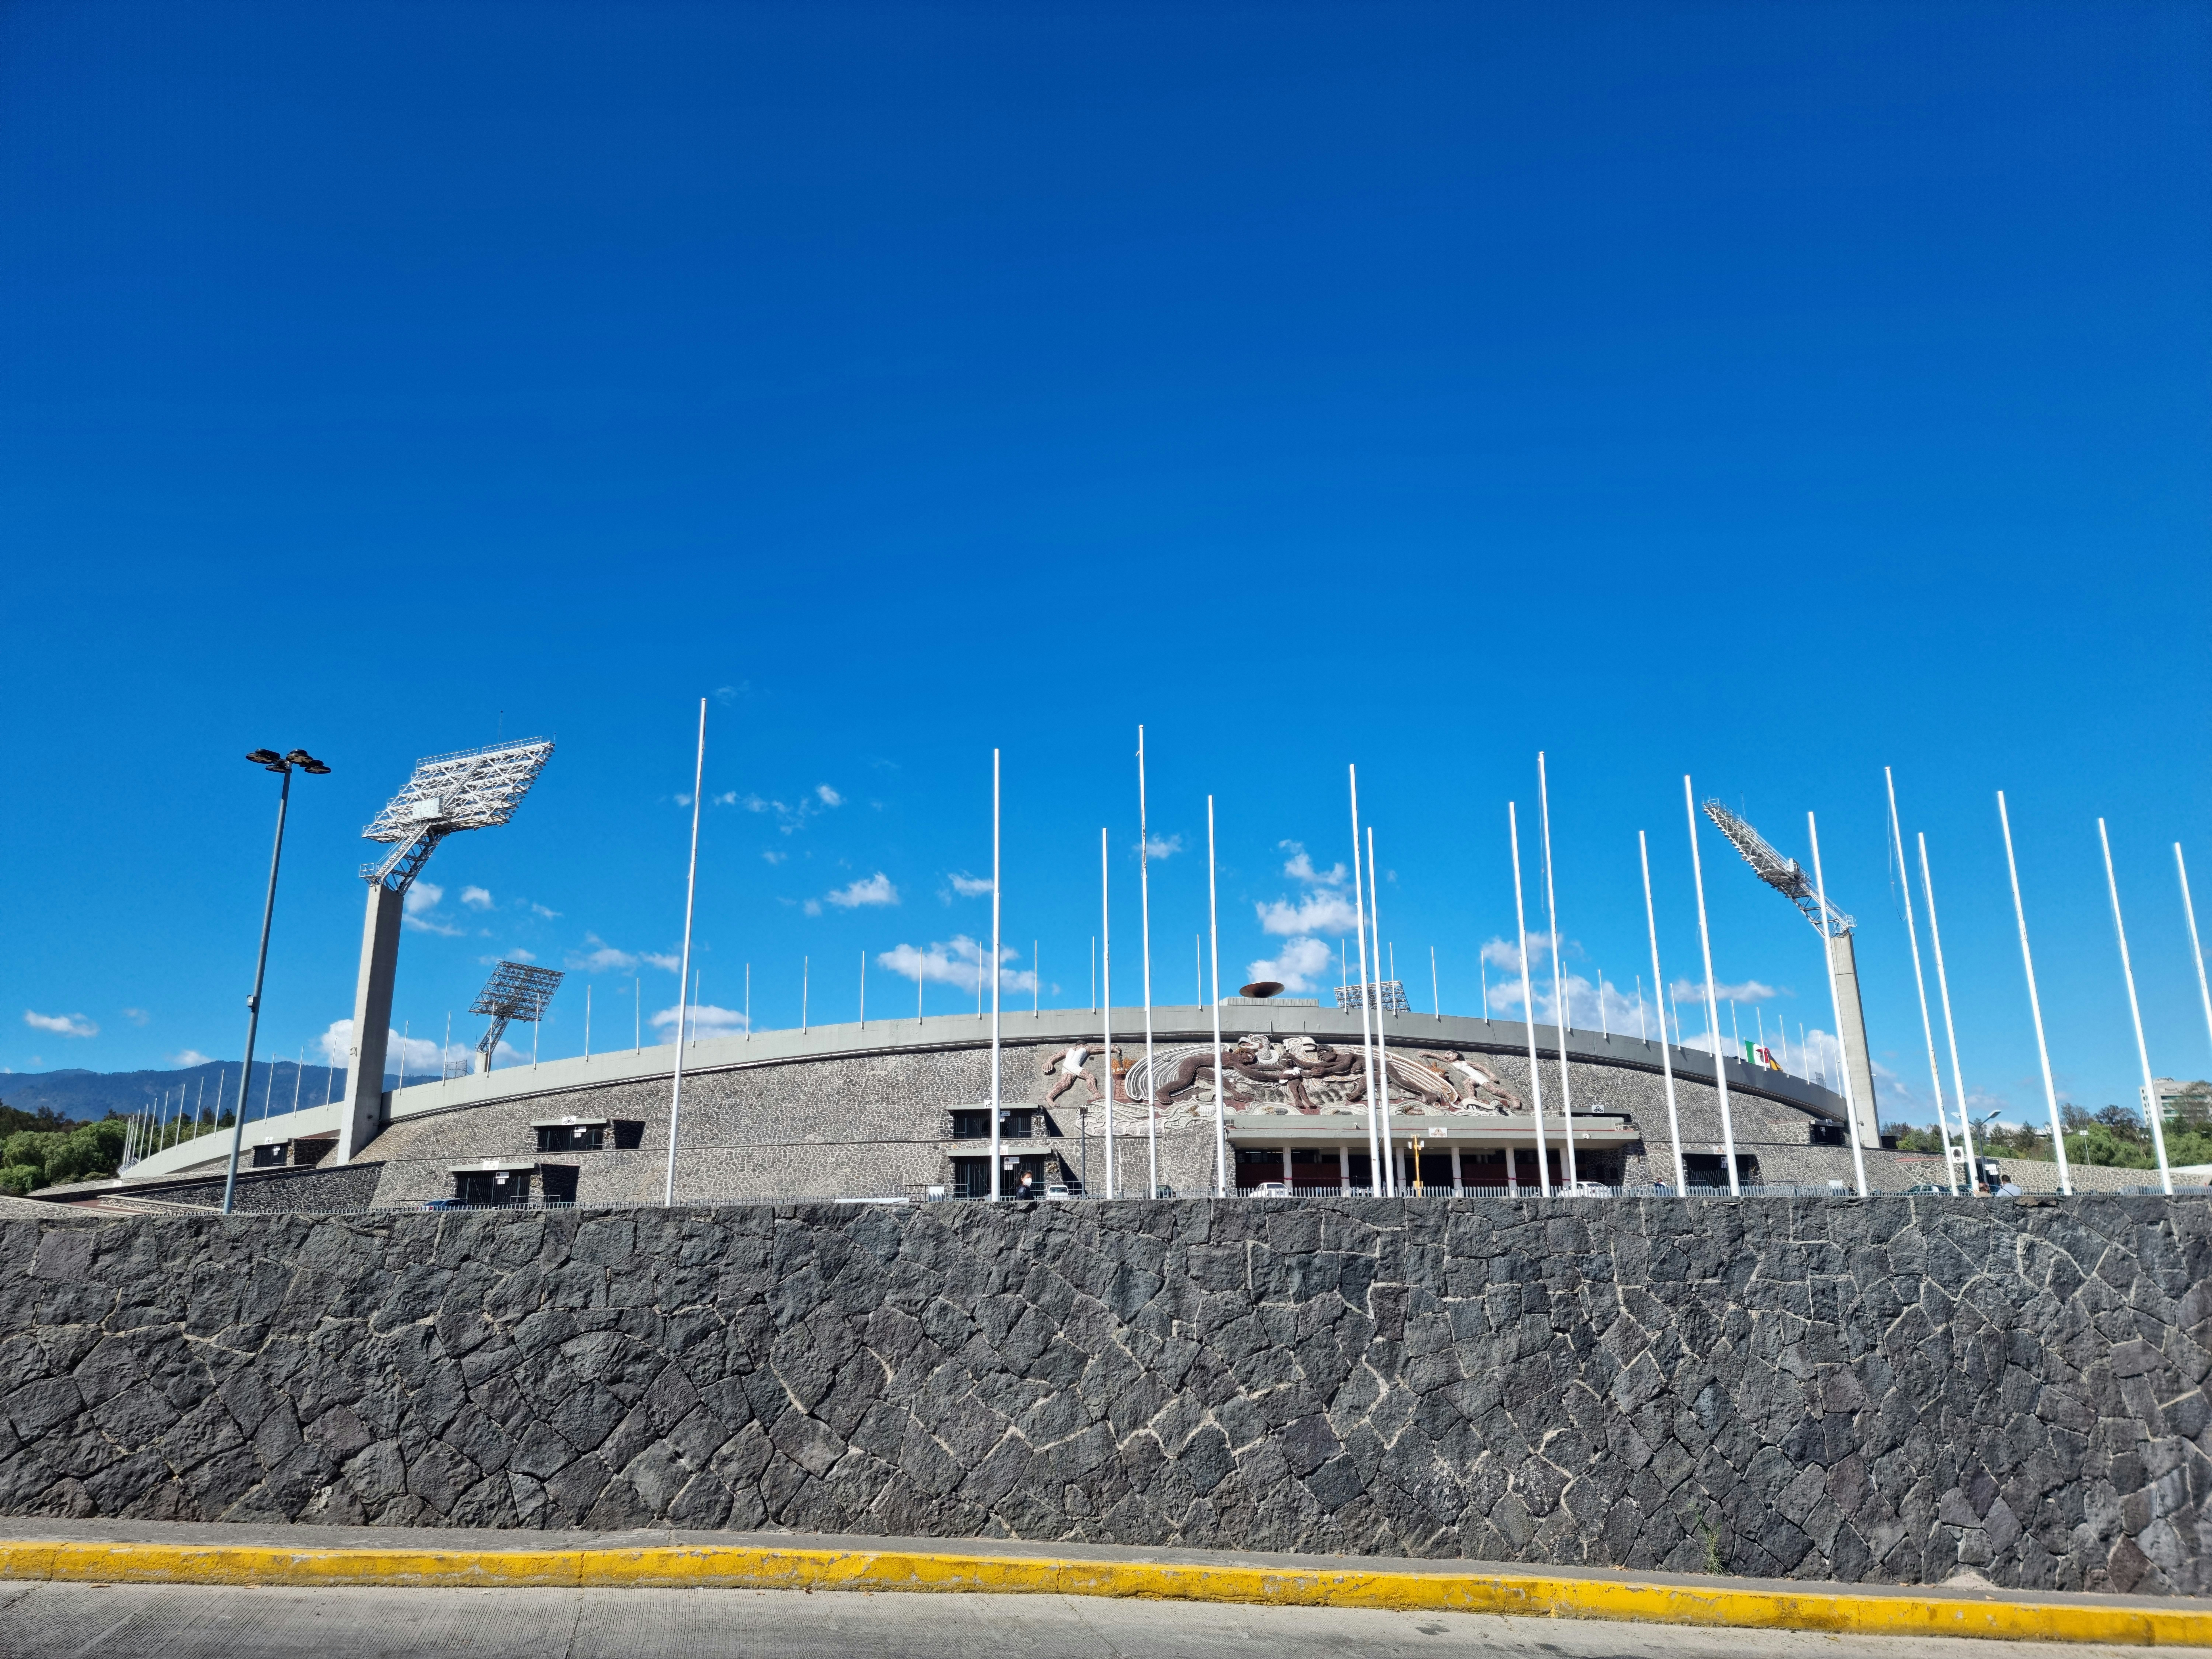 University Olympic Stadium (Pumas, UNAM) 1968 Summer Olympics venue in Mexico